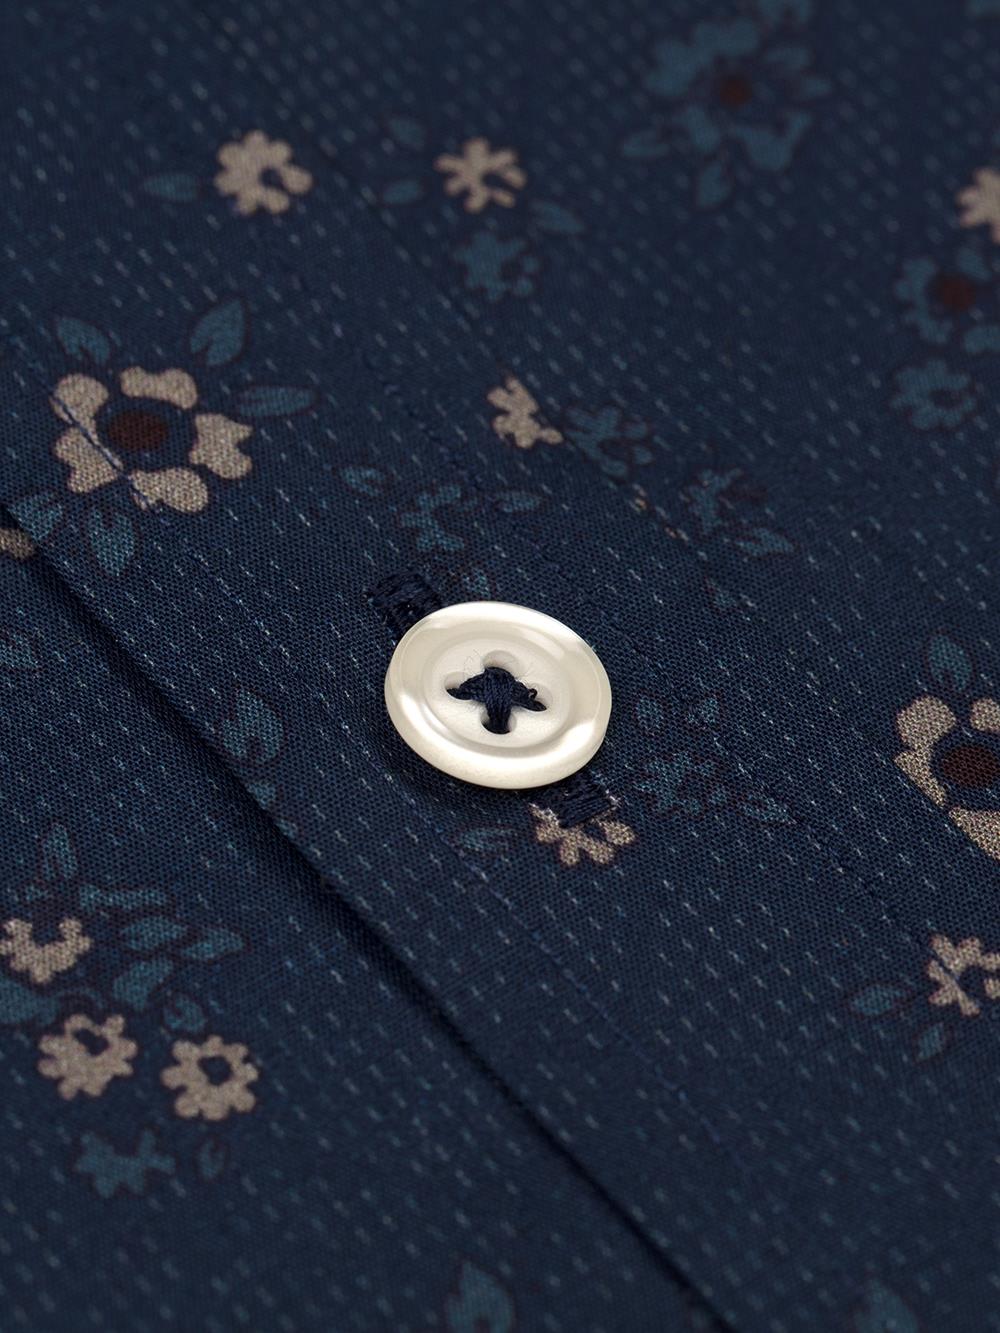 Bretty Shirt - Buttoned collar